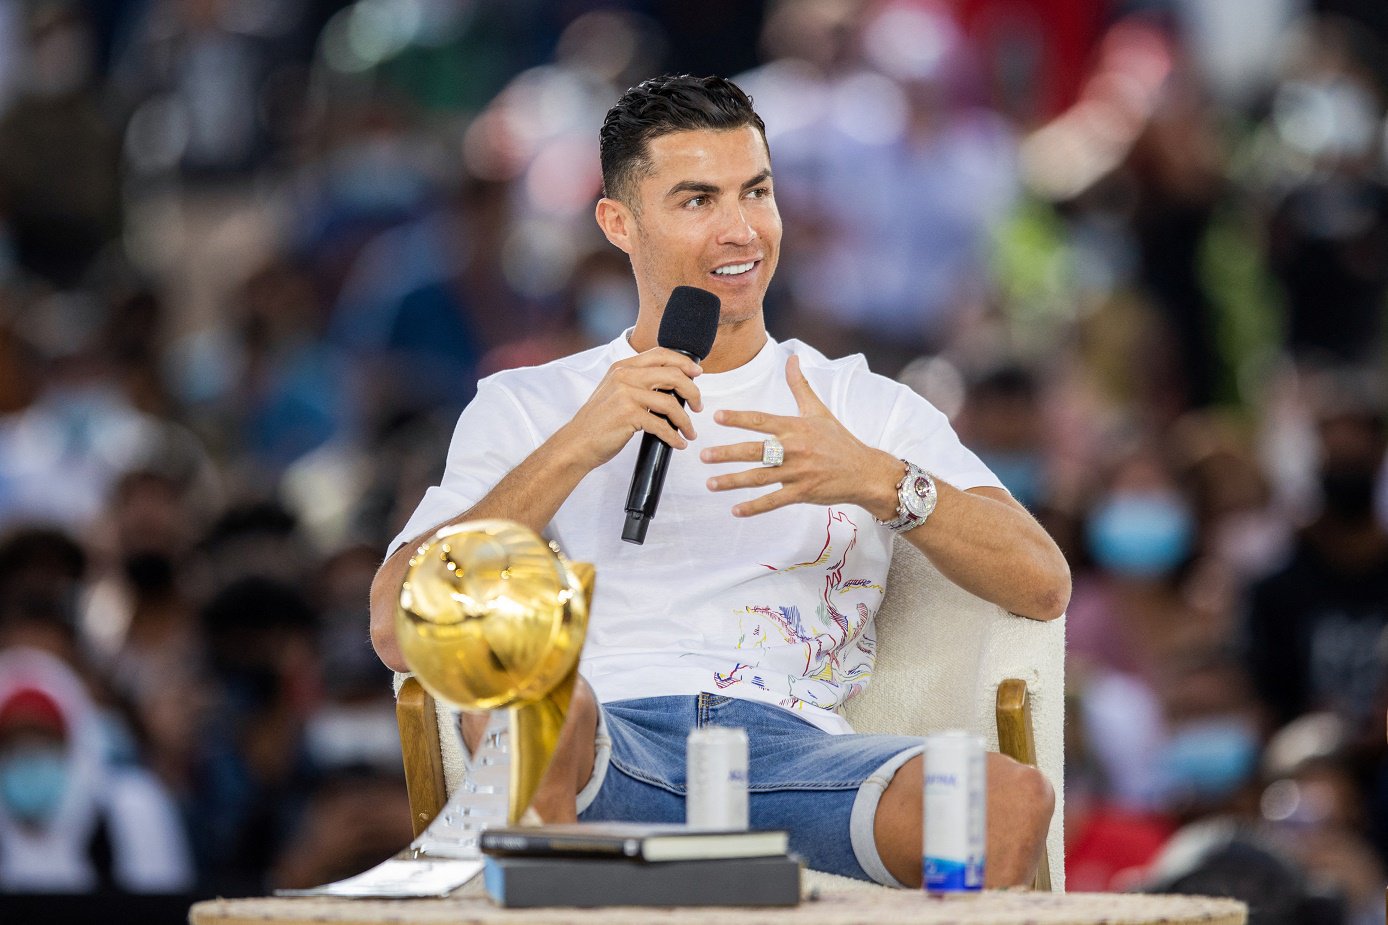 Ronaldo, giải thưởng, Dubai: Hãy cùng đón xem hình ảnh Ronaldo tại lễ trao giải thưởng ở Dubai với vẻ ngoài tự tin và phong độ đỉnh cao. Anh chàng vốn là một trong những cầu thủ hàng đầu thế giới, và chắc chắn sẽ làm bạn say mê bởi tài năng bóng đá mà anh sở hữu.